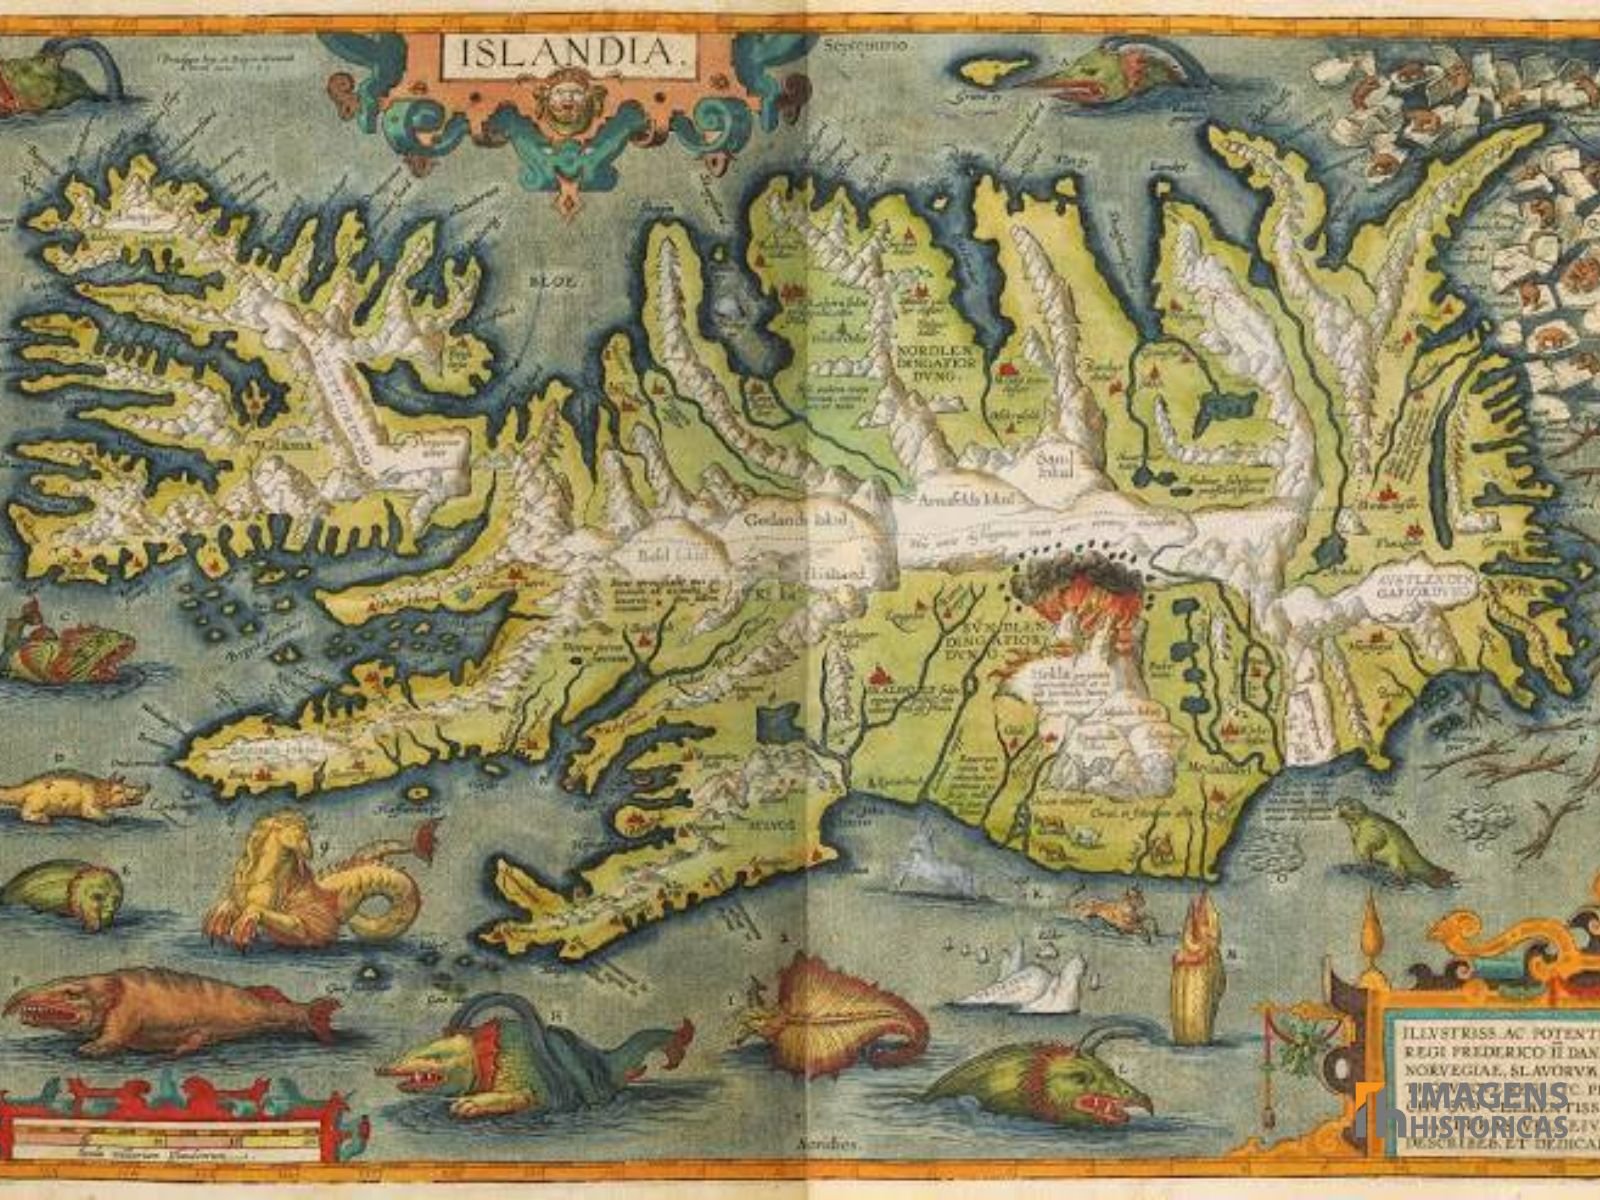 Monstros Marinhos: Cartografia Mostrando a Islândia e Alguns Monstros Marinhos Medievais.